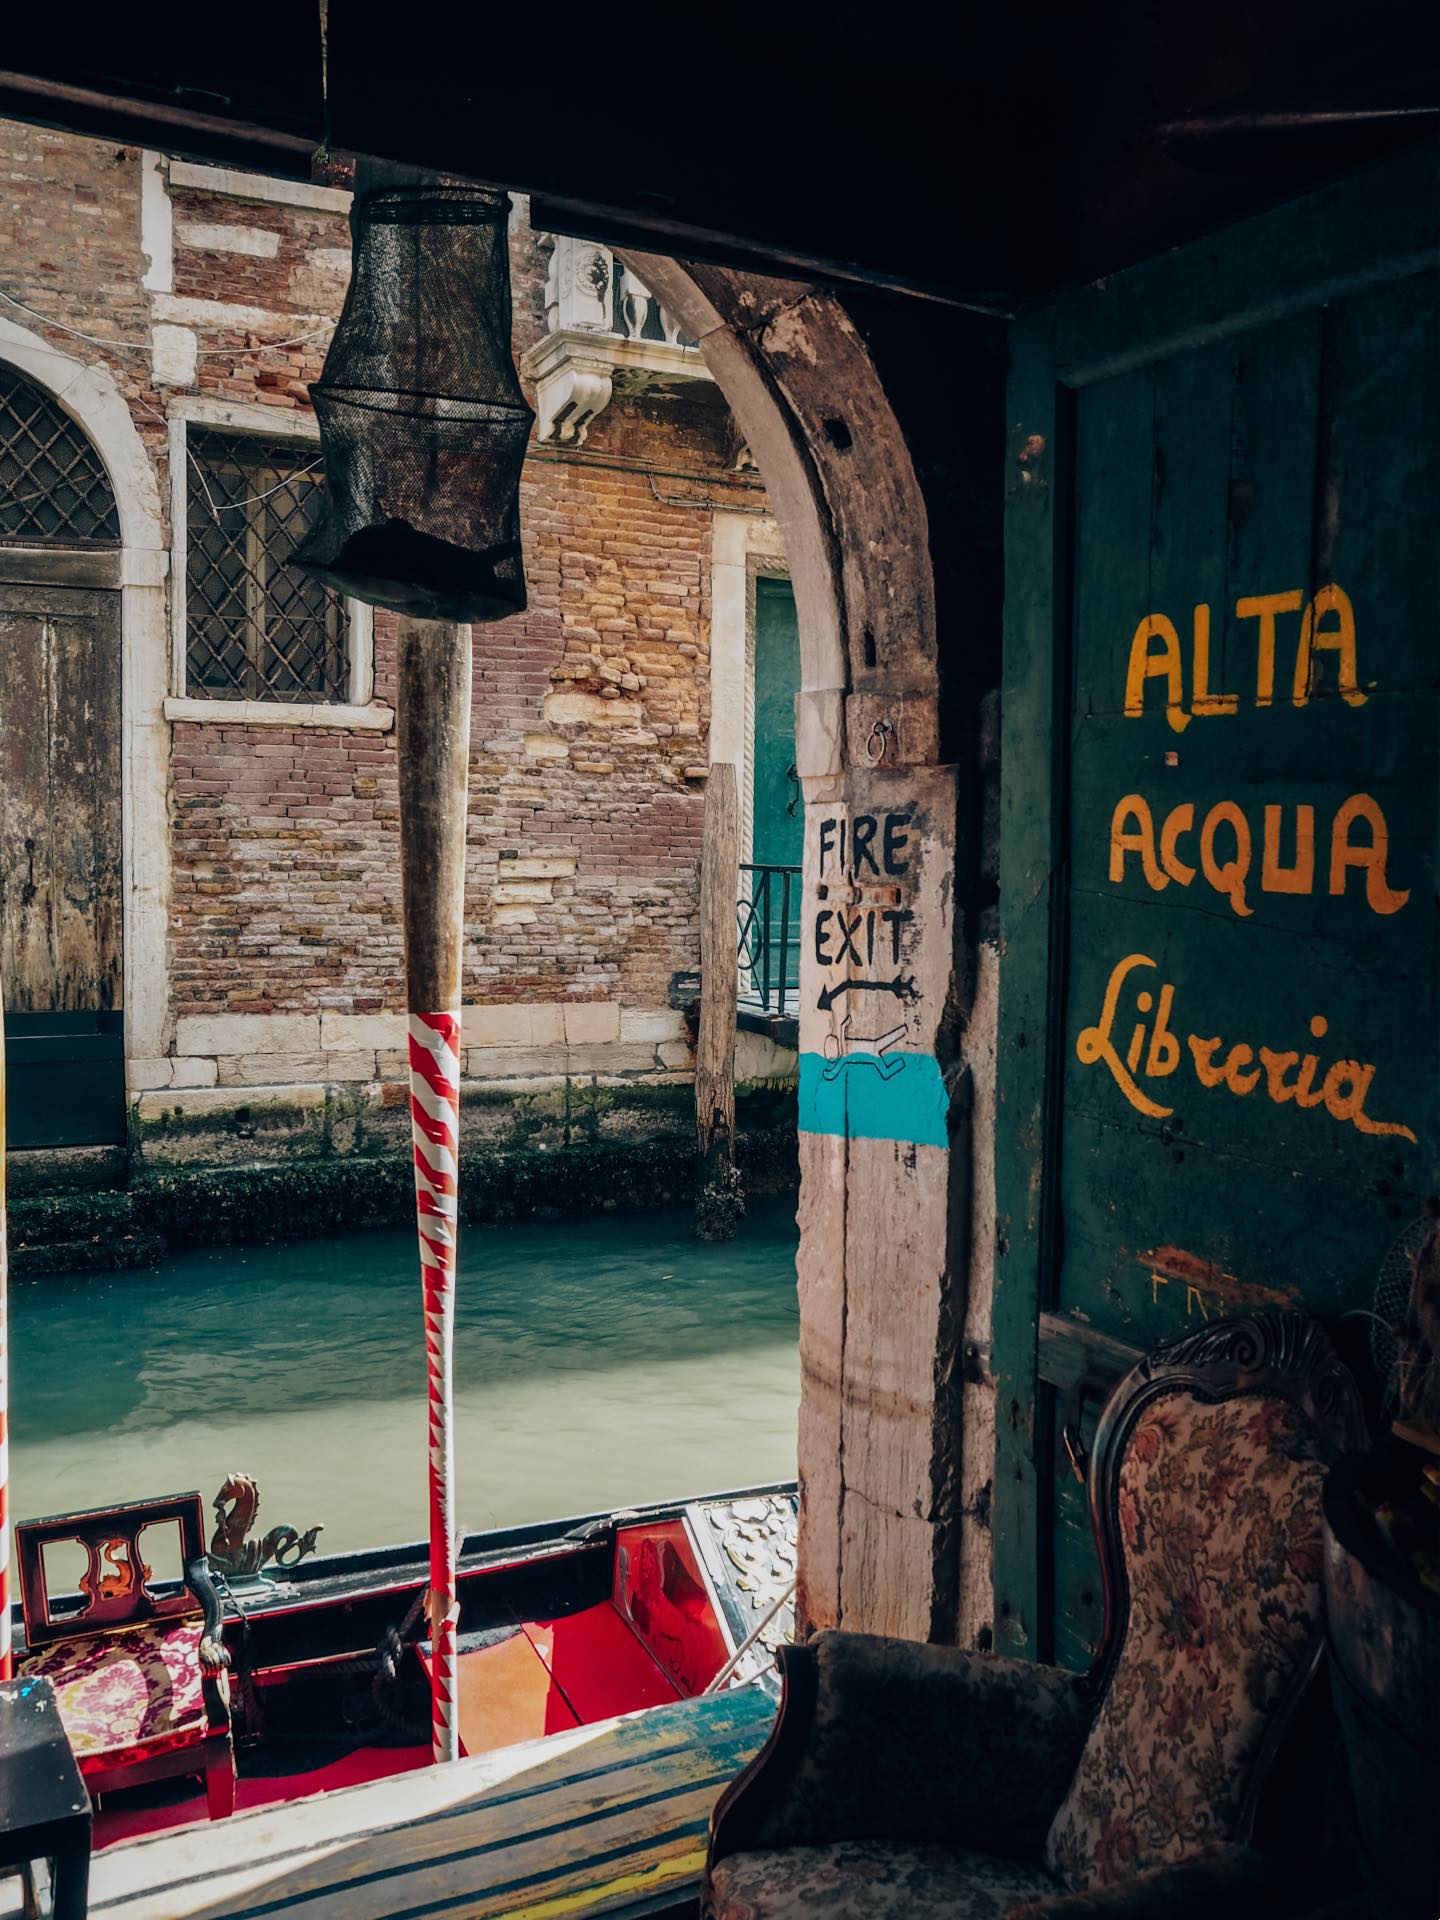 Librería Acqua Alta, la más bonita que ver en Venecia